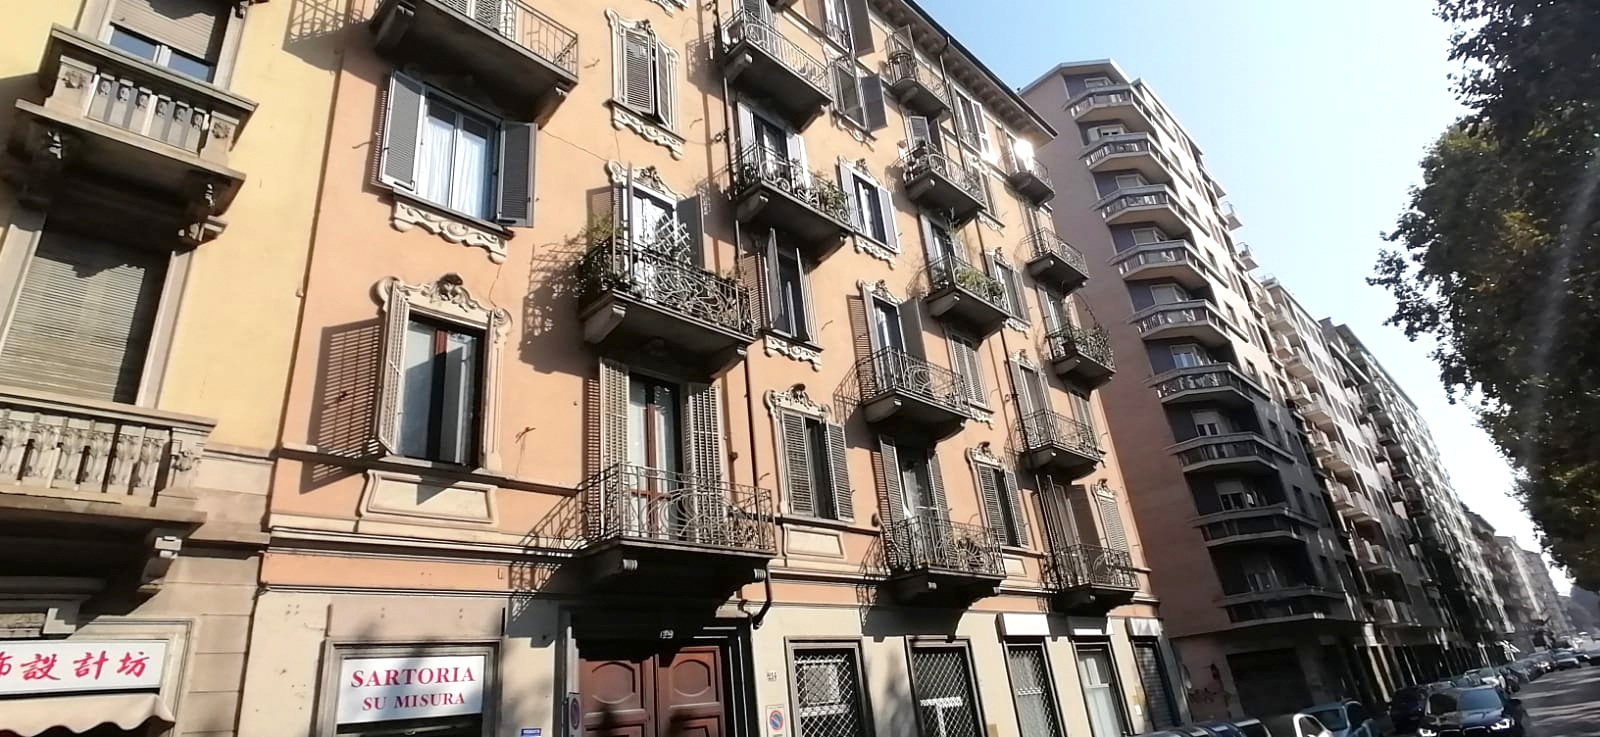 Torino, San Donato, Corso Regina Margherita